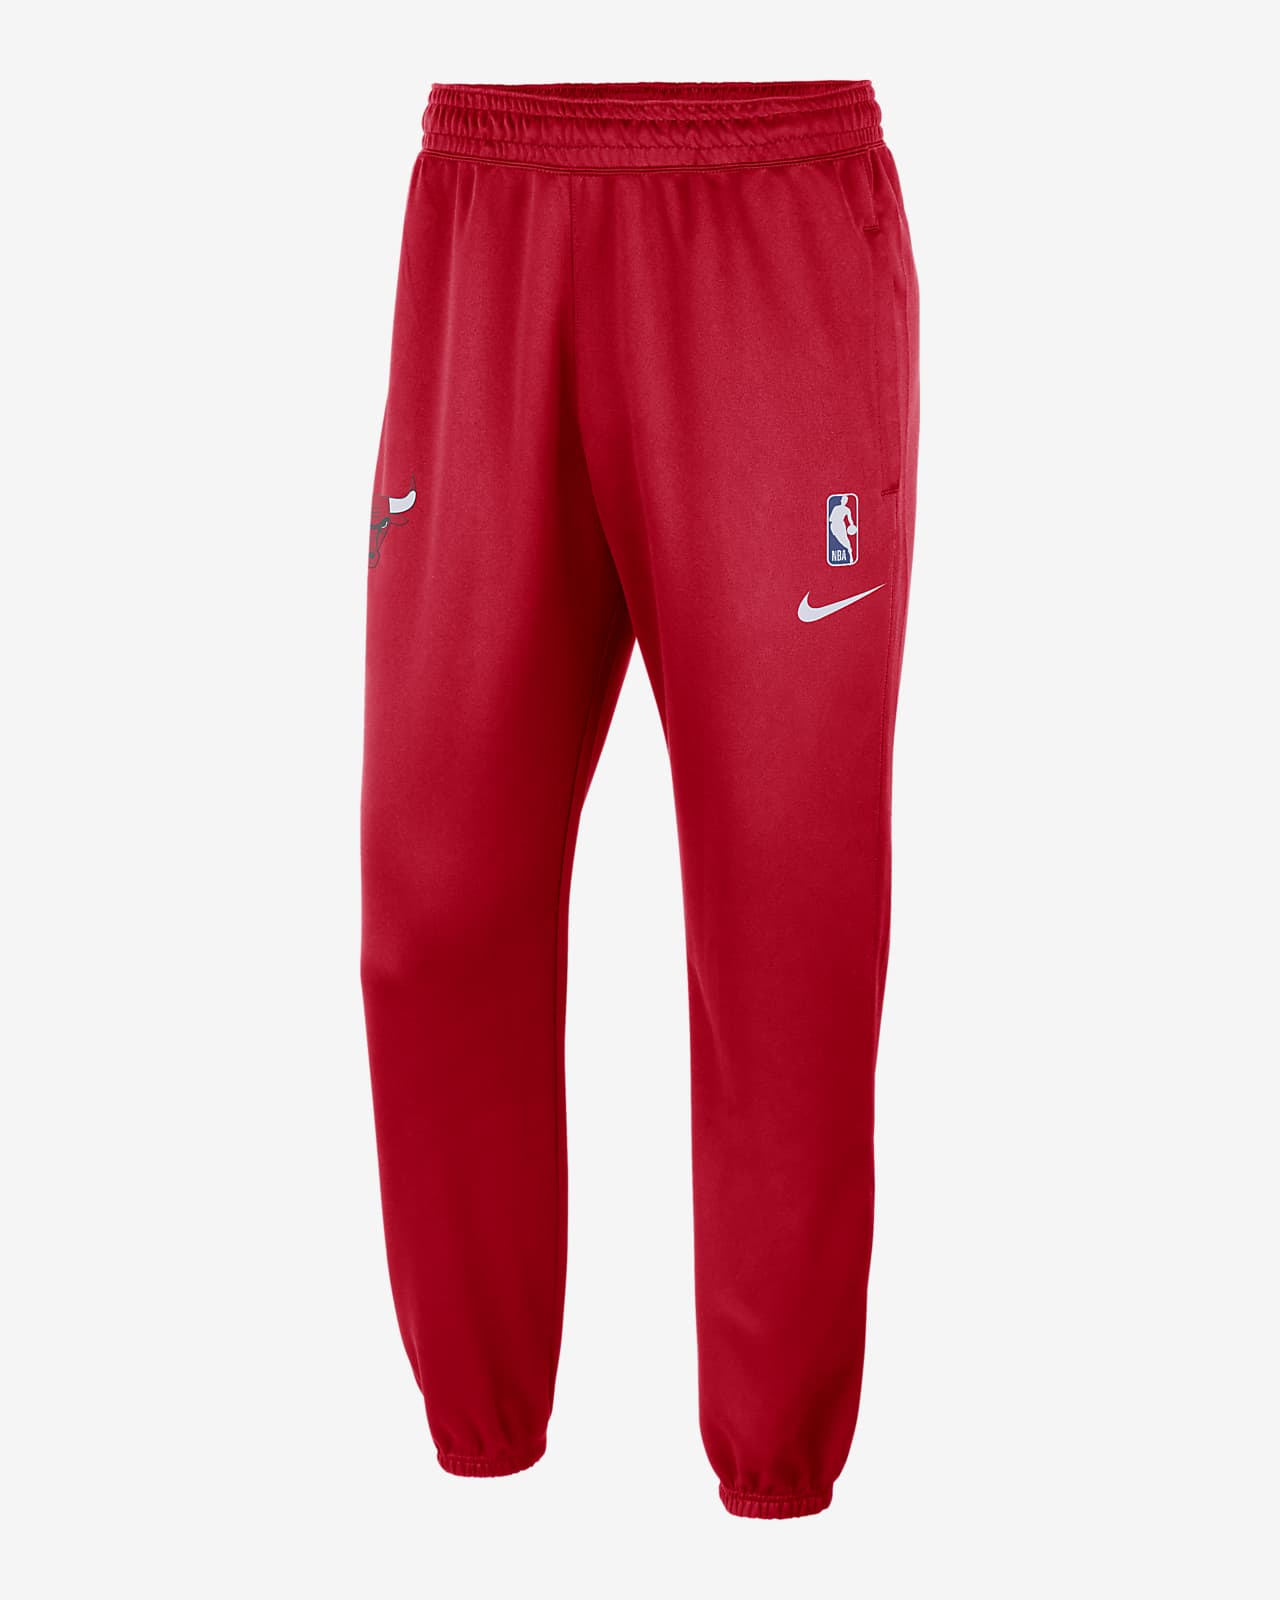 ir a buscar codicioso Acusación Pantalones Nike Dri-FIT de la NBA para hombres Chicago Bulls Spotlight. Nike .com